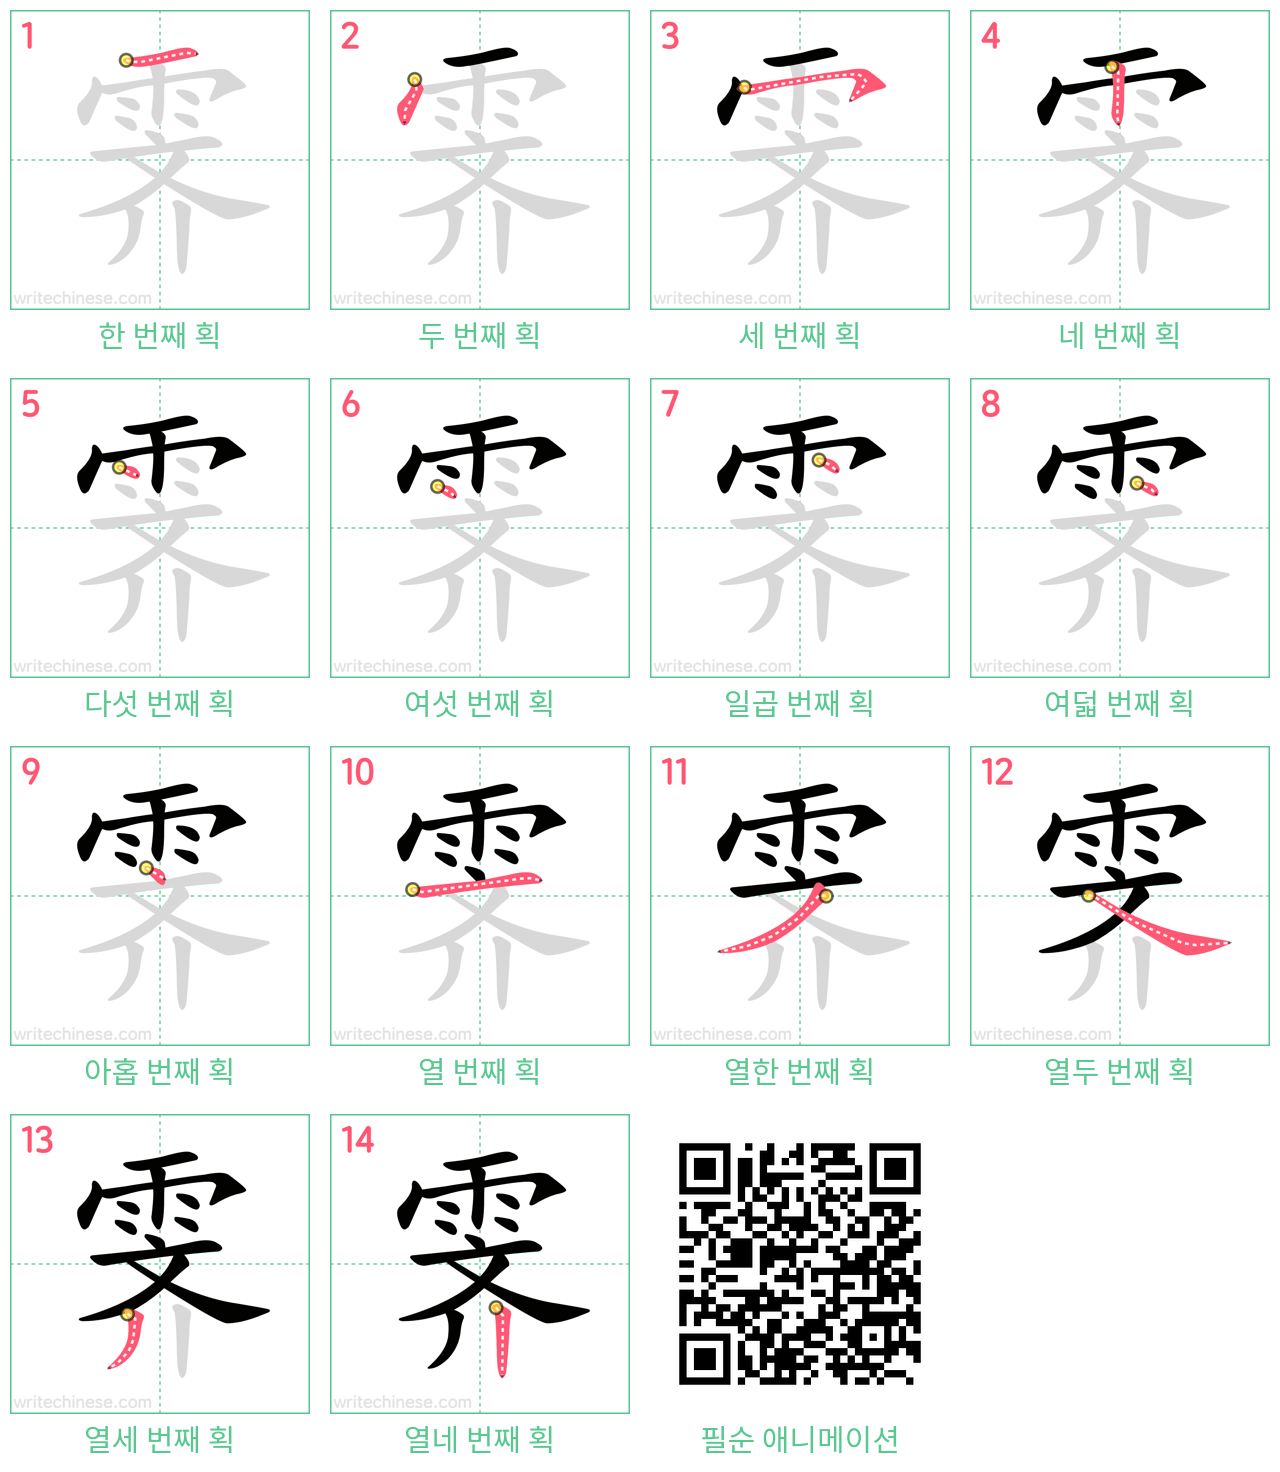 霁 step-by-step stroke order diagrams